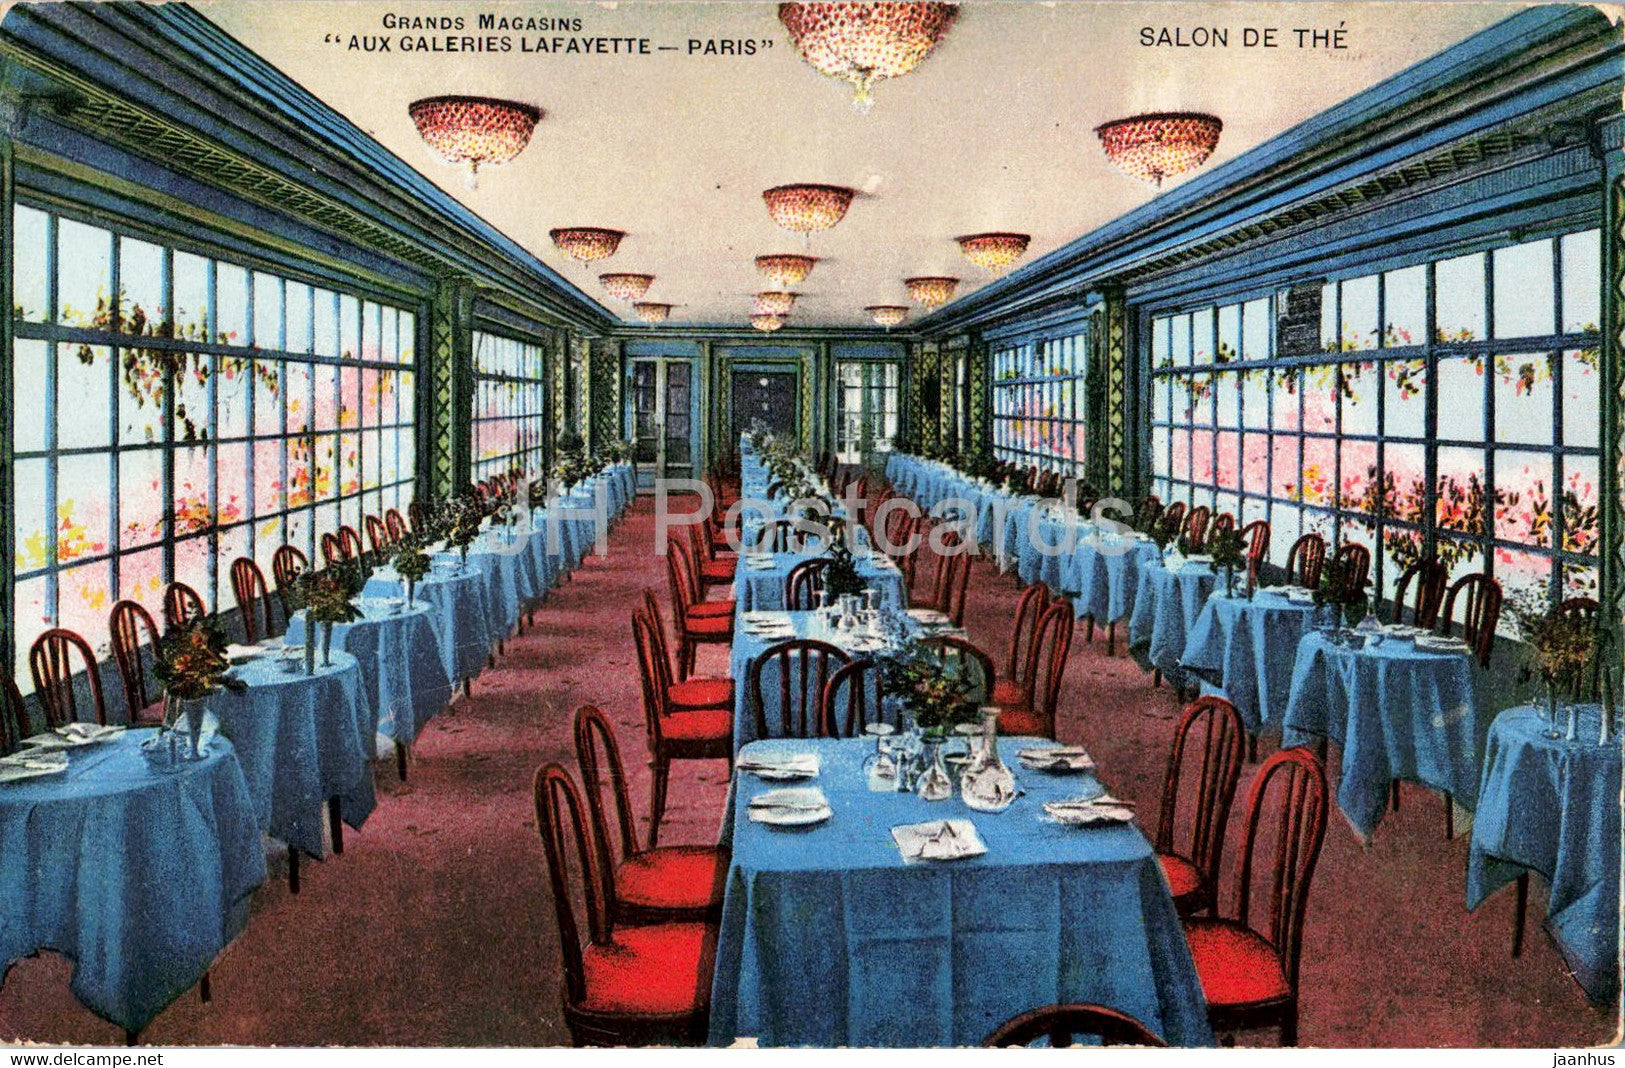 Paris - Salon de The - Grands Magasins Aux Galeries Lafayette - old postcard - France - unused - JH Postcards